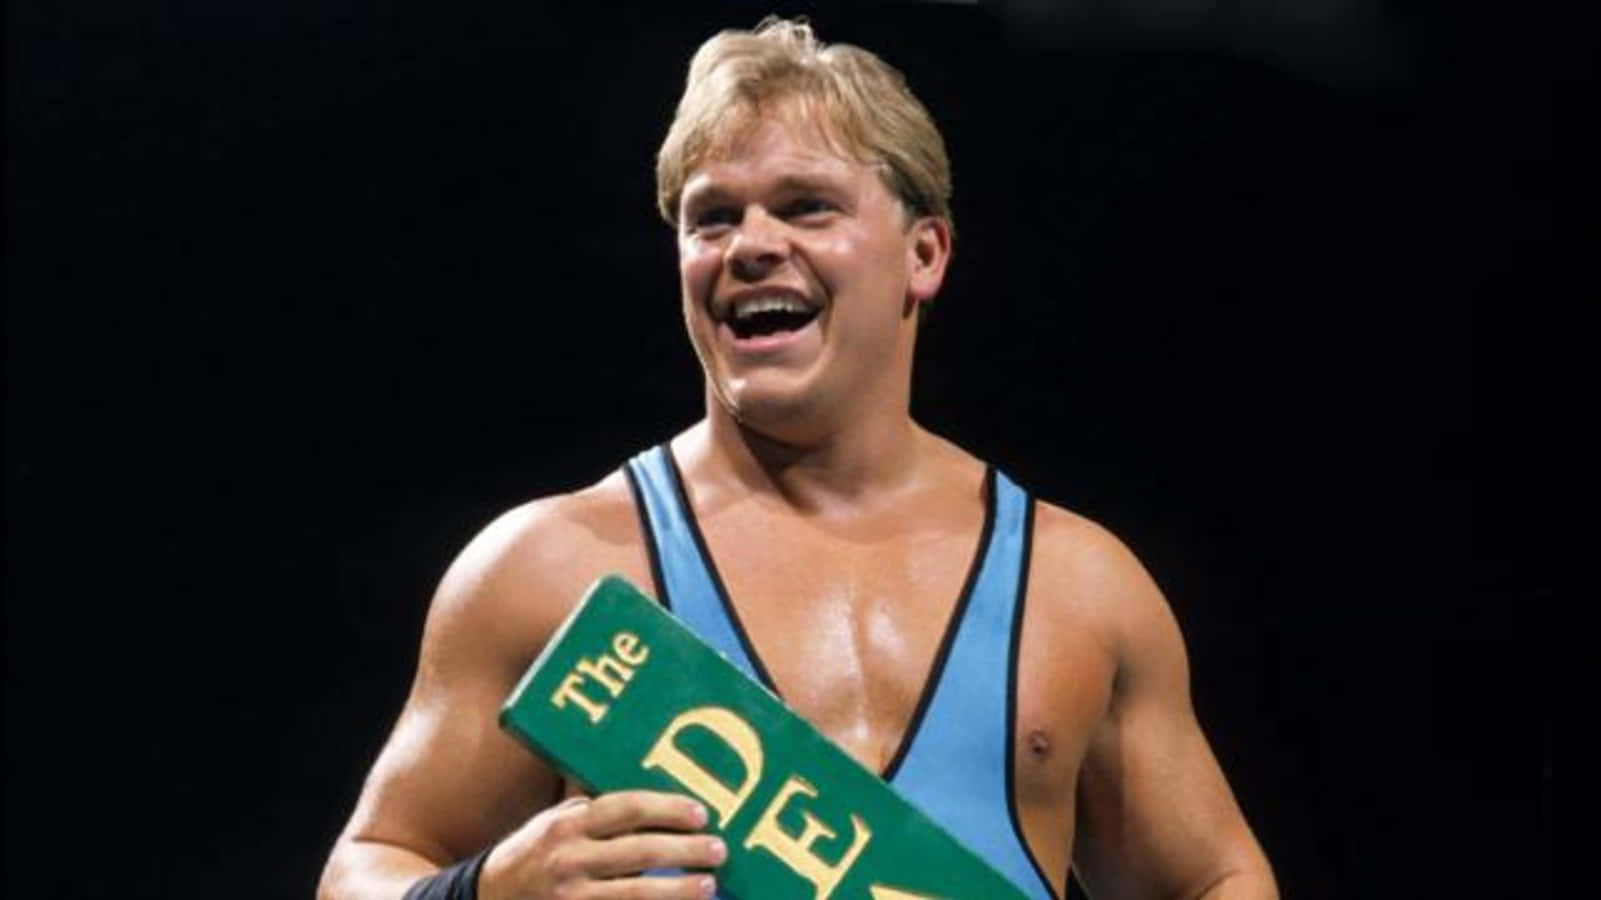 Smiling American Former Wrestler Shane Douglas Wallpaper